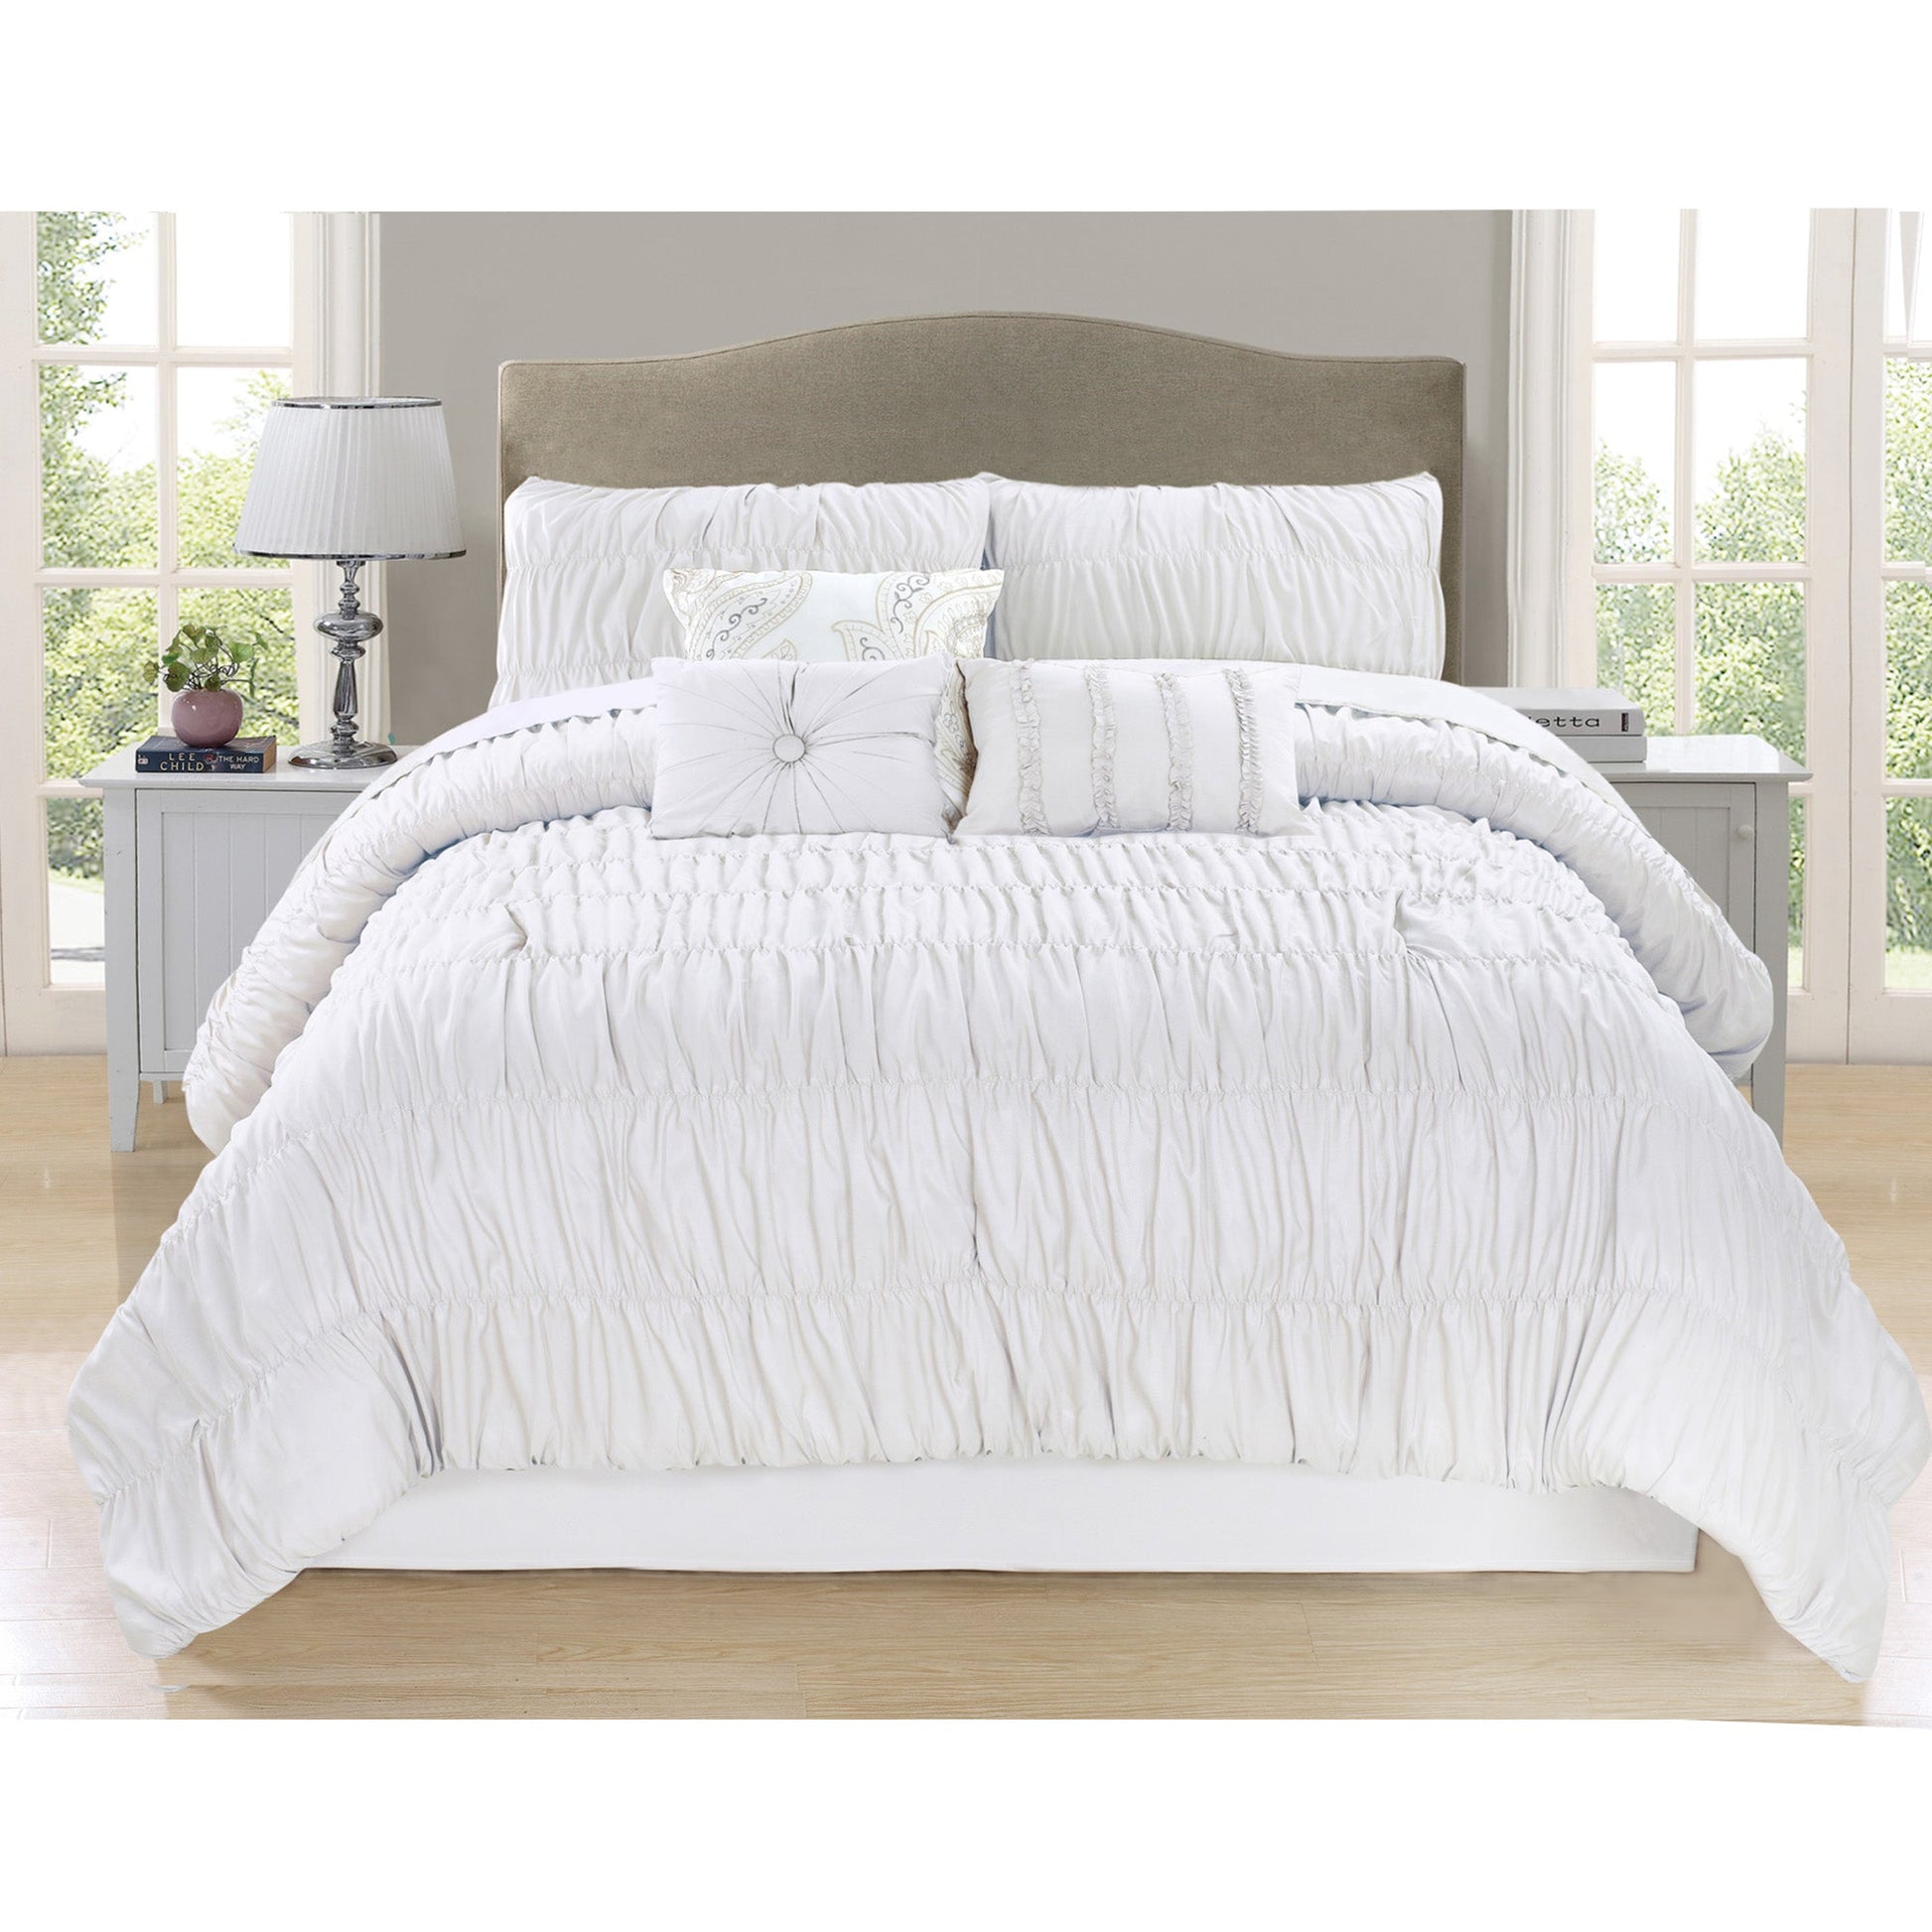 Comforter Marysa 7 Piece King White - DecoElegance - Bedding Comforter Set